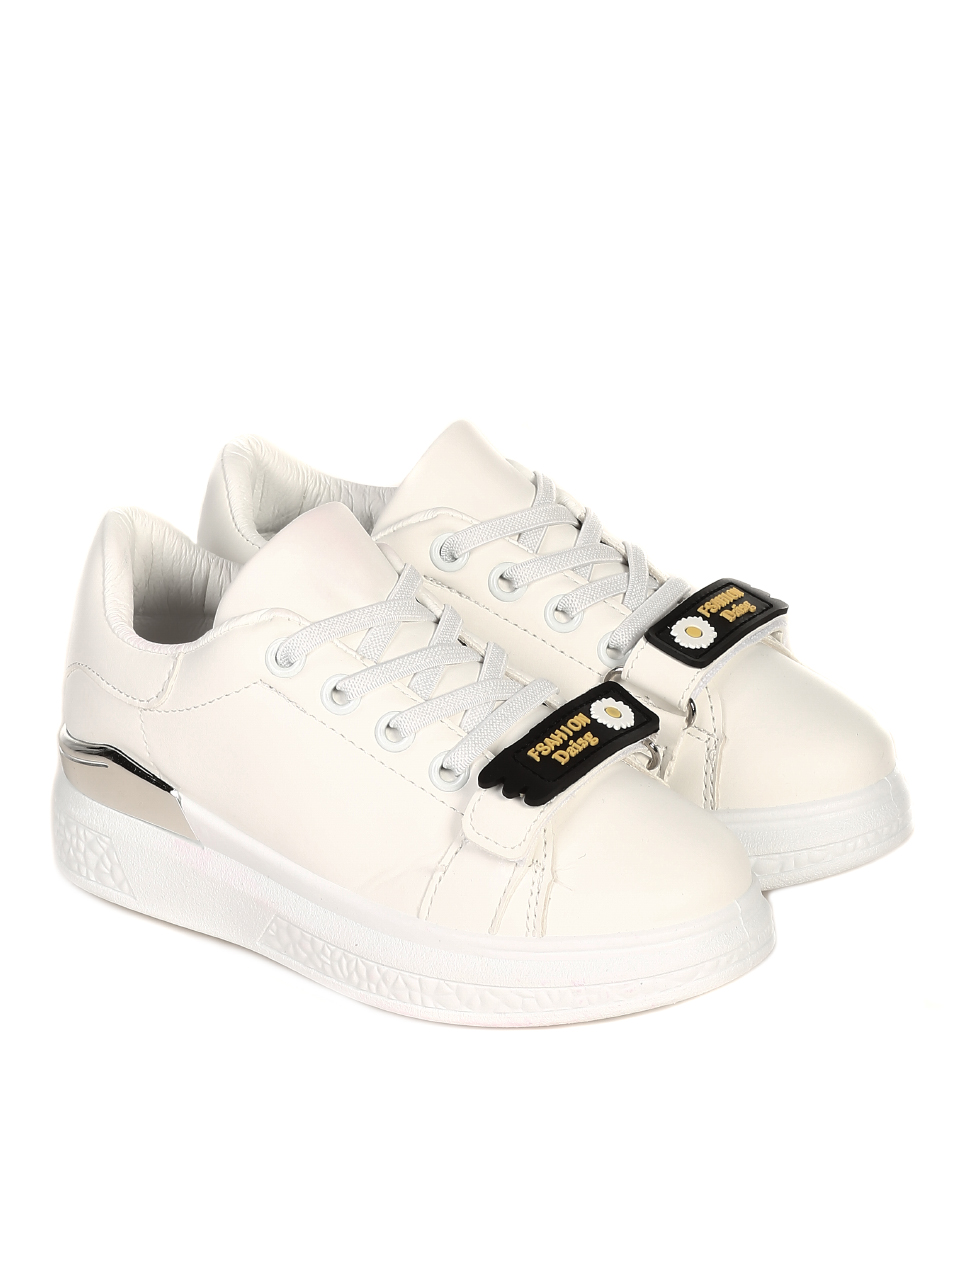 Ежедневни детски обувки в бяло 18U-21063 white